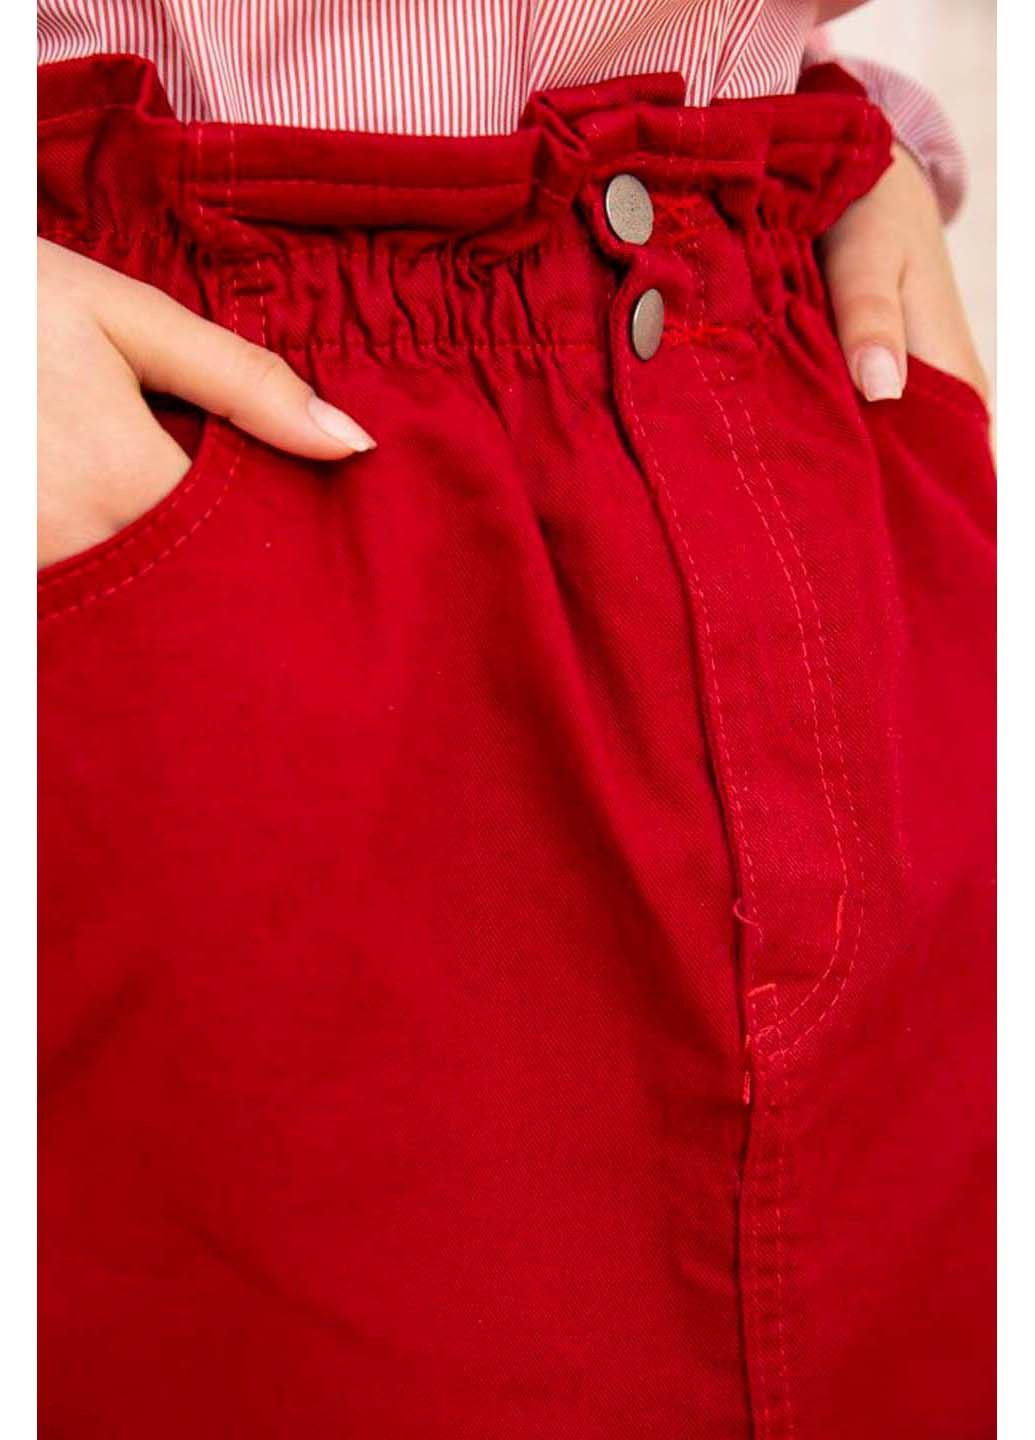 Красная юбка Ager